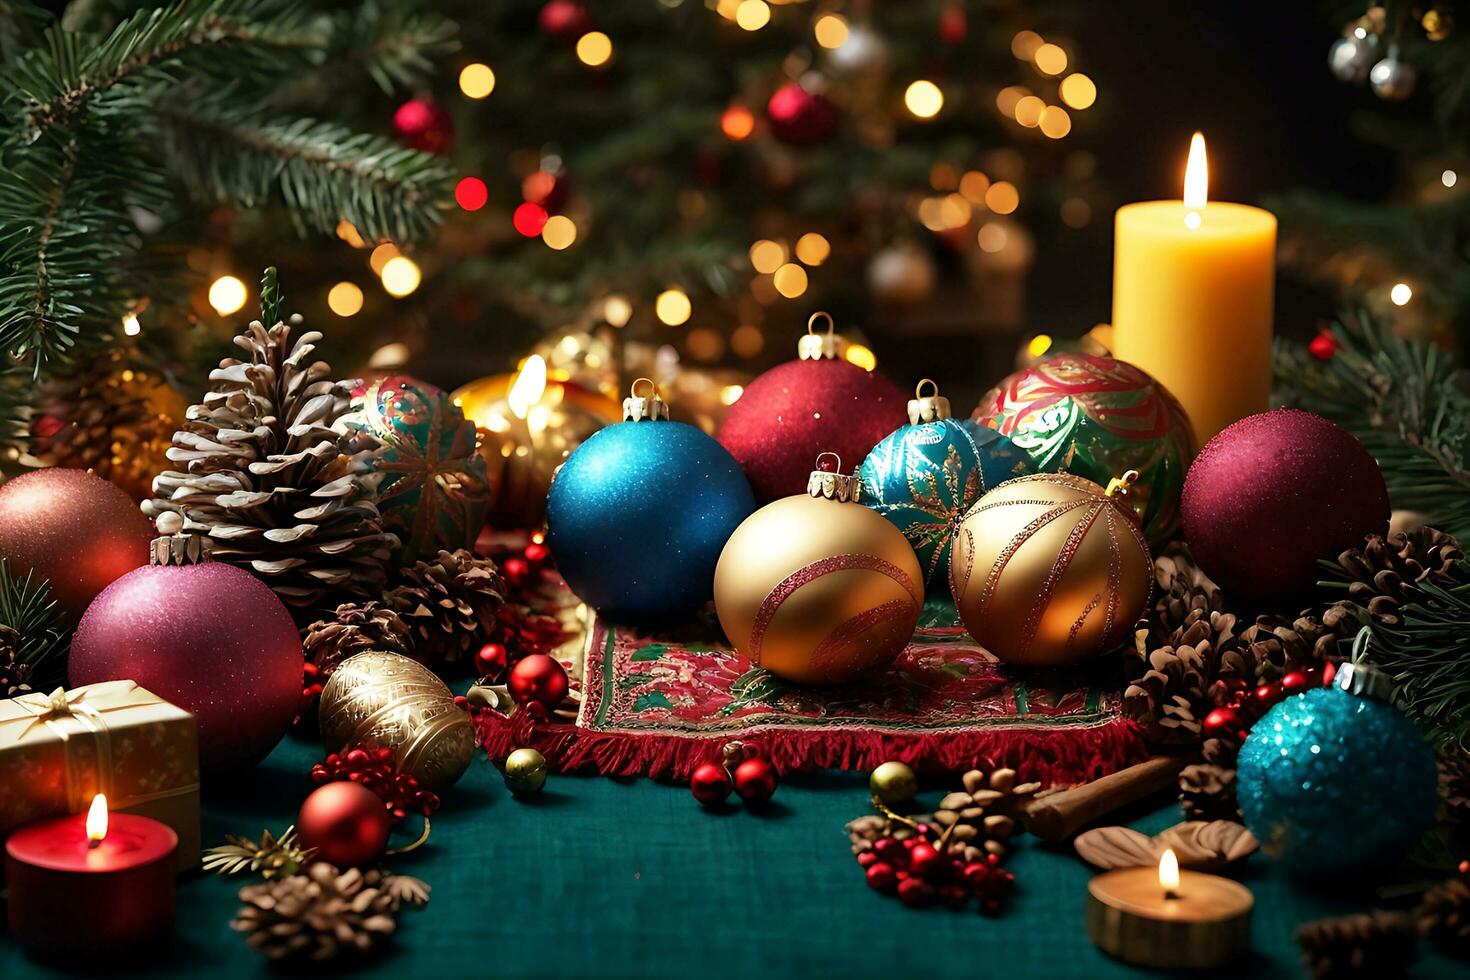 Erfahrung ein global Feier mit ein KI-gefertigt Weihnachten Komposition. vielfältig Tanne Baum Geäst und Ornamente vertreten multikulturell Urlaub Traditionen, Förderung Einheit und Vielfalt während foto